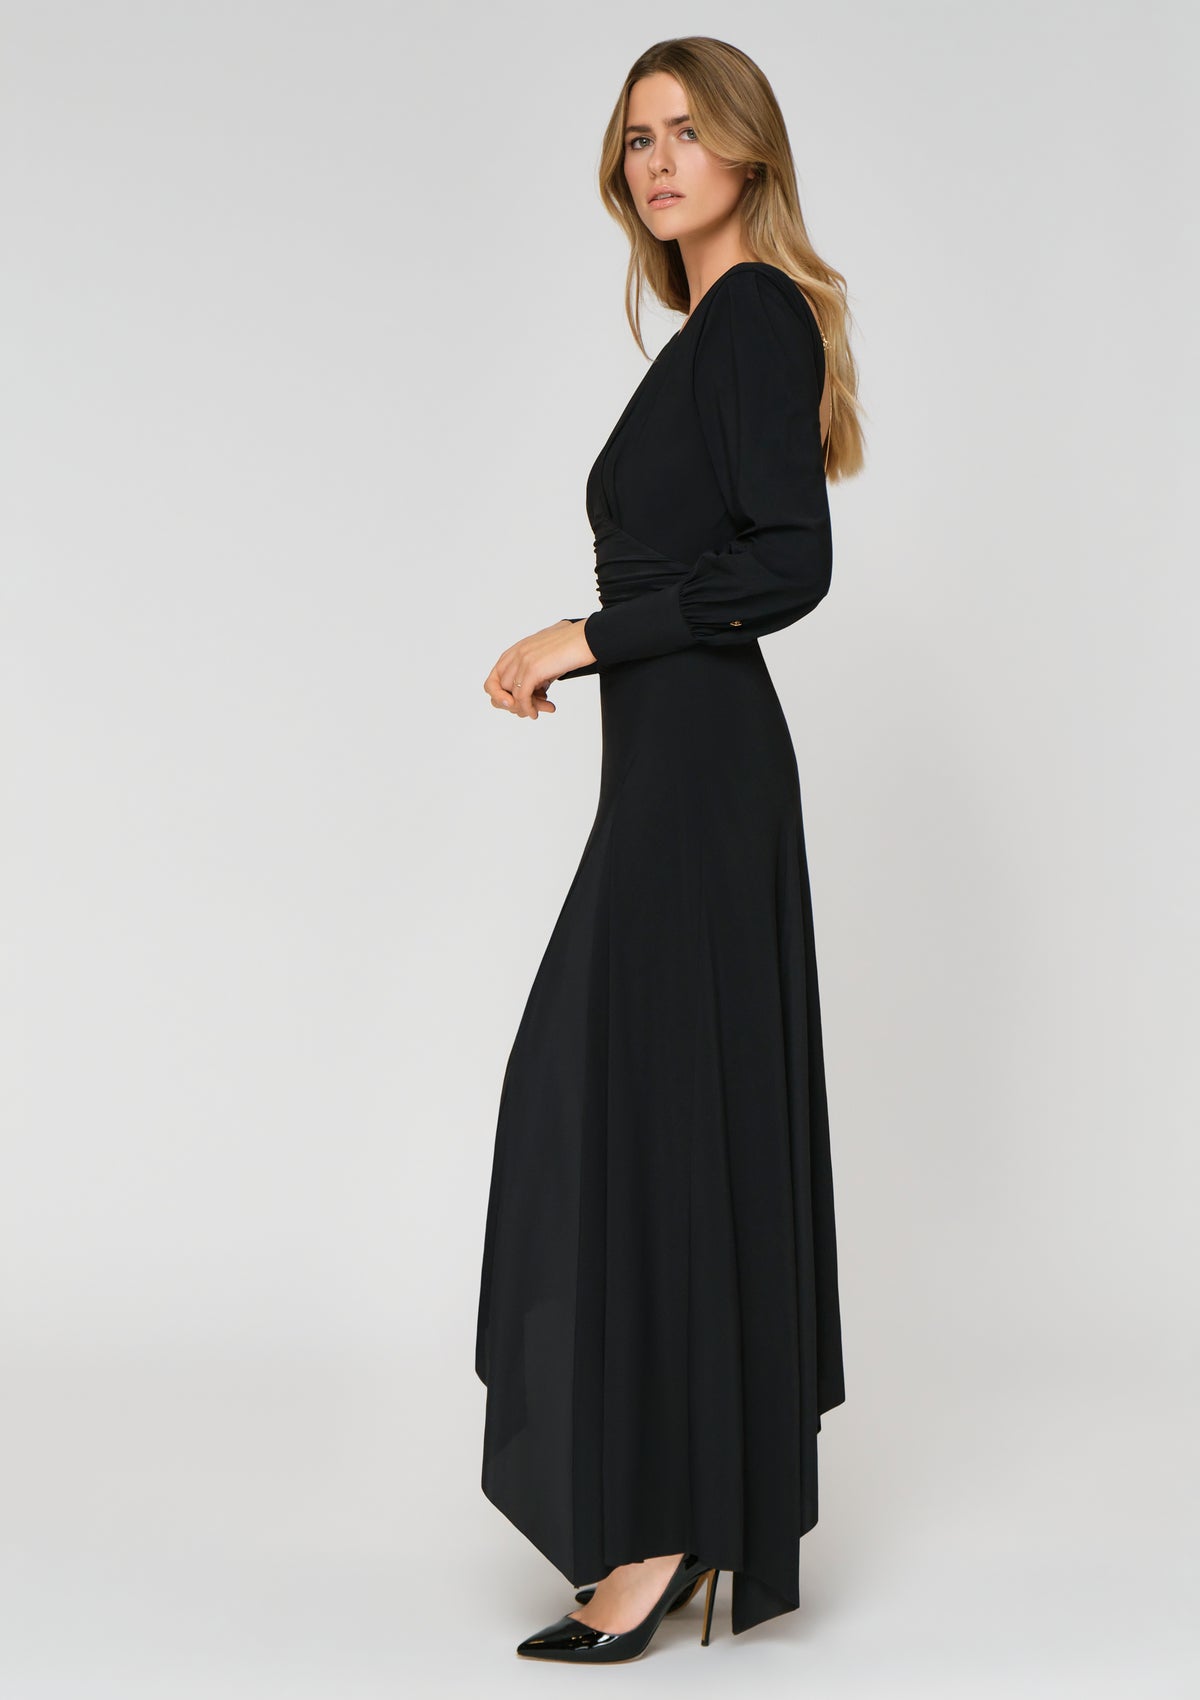 SCINTILLA Kleid schwarz